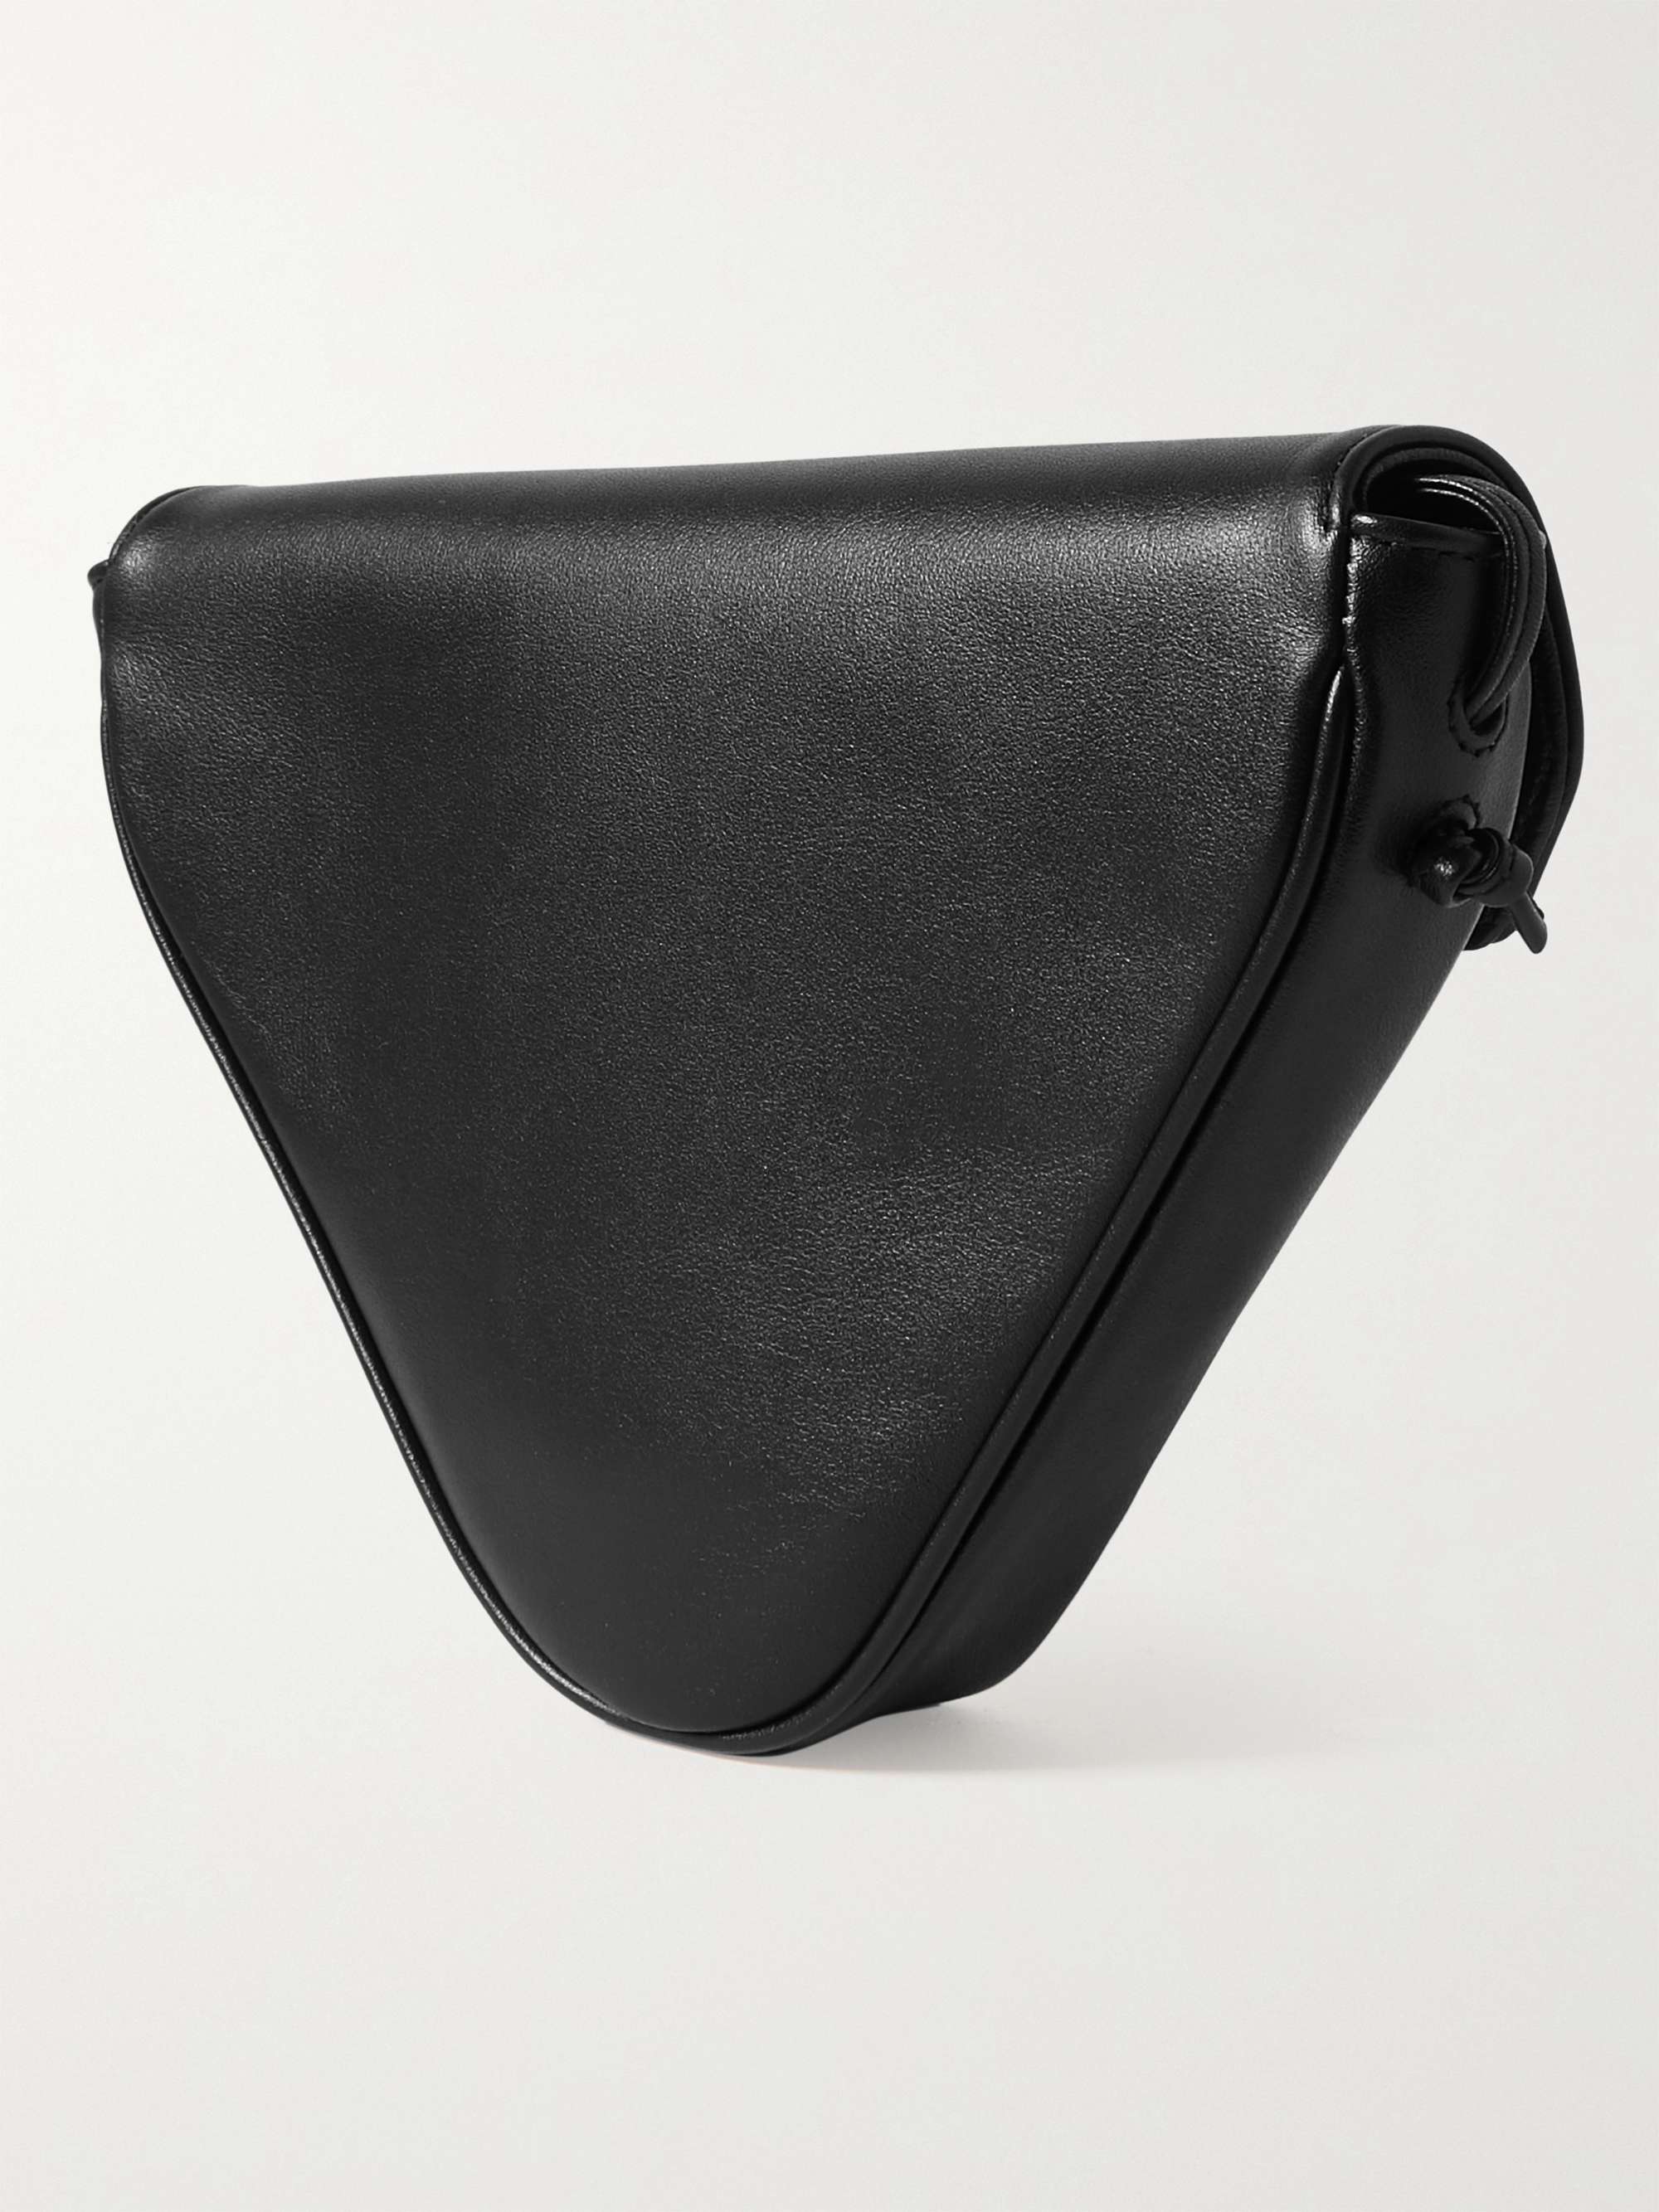 CELINE HOMME Logo-Print Leather Messenger Bag